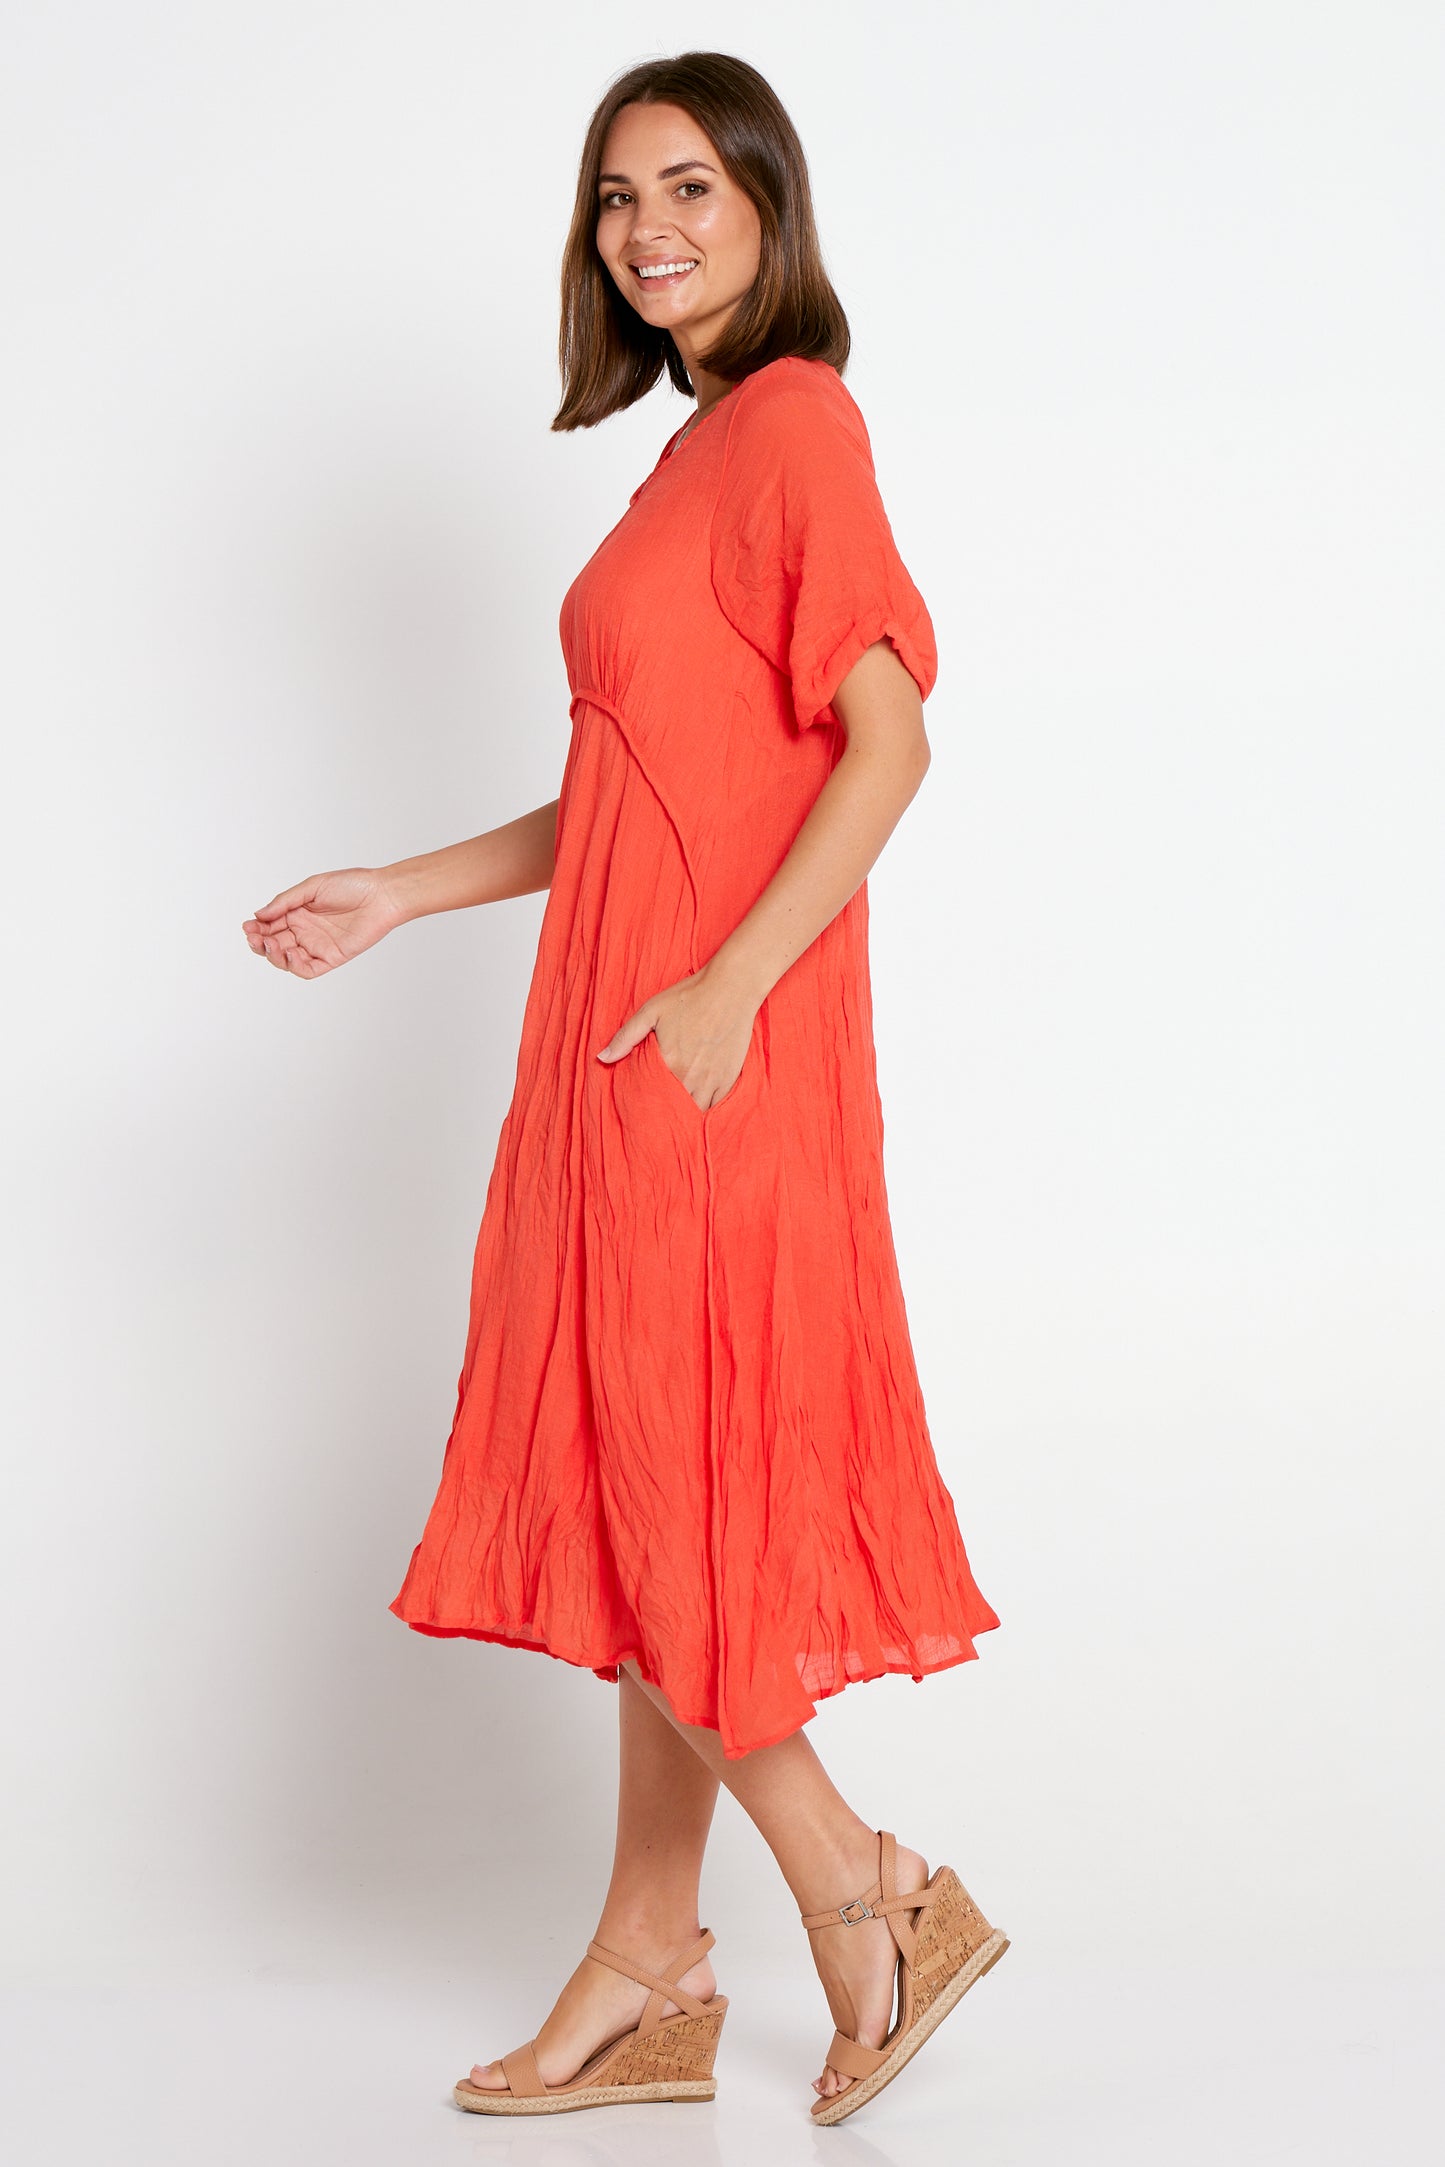 Waterhouse Dress - Orange